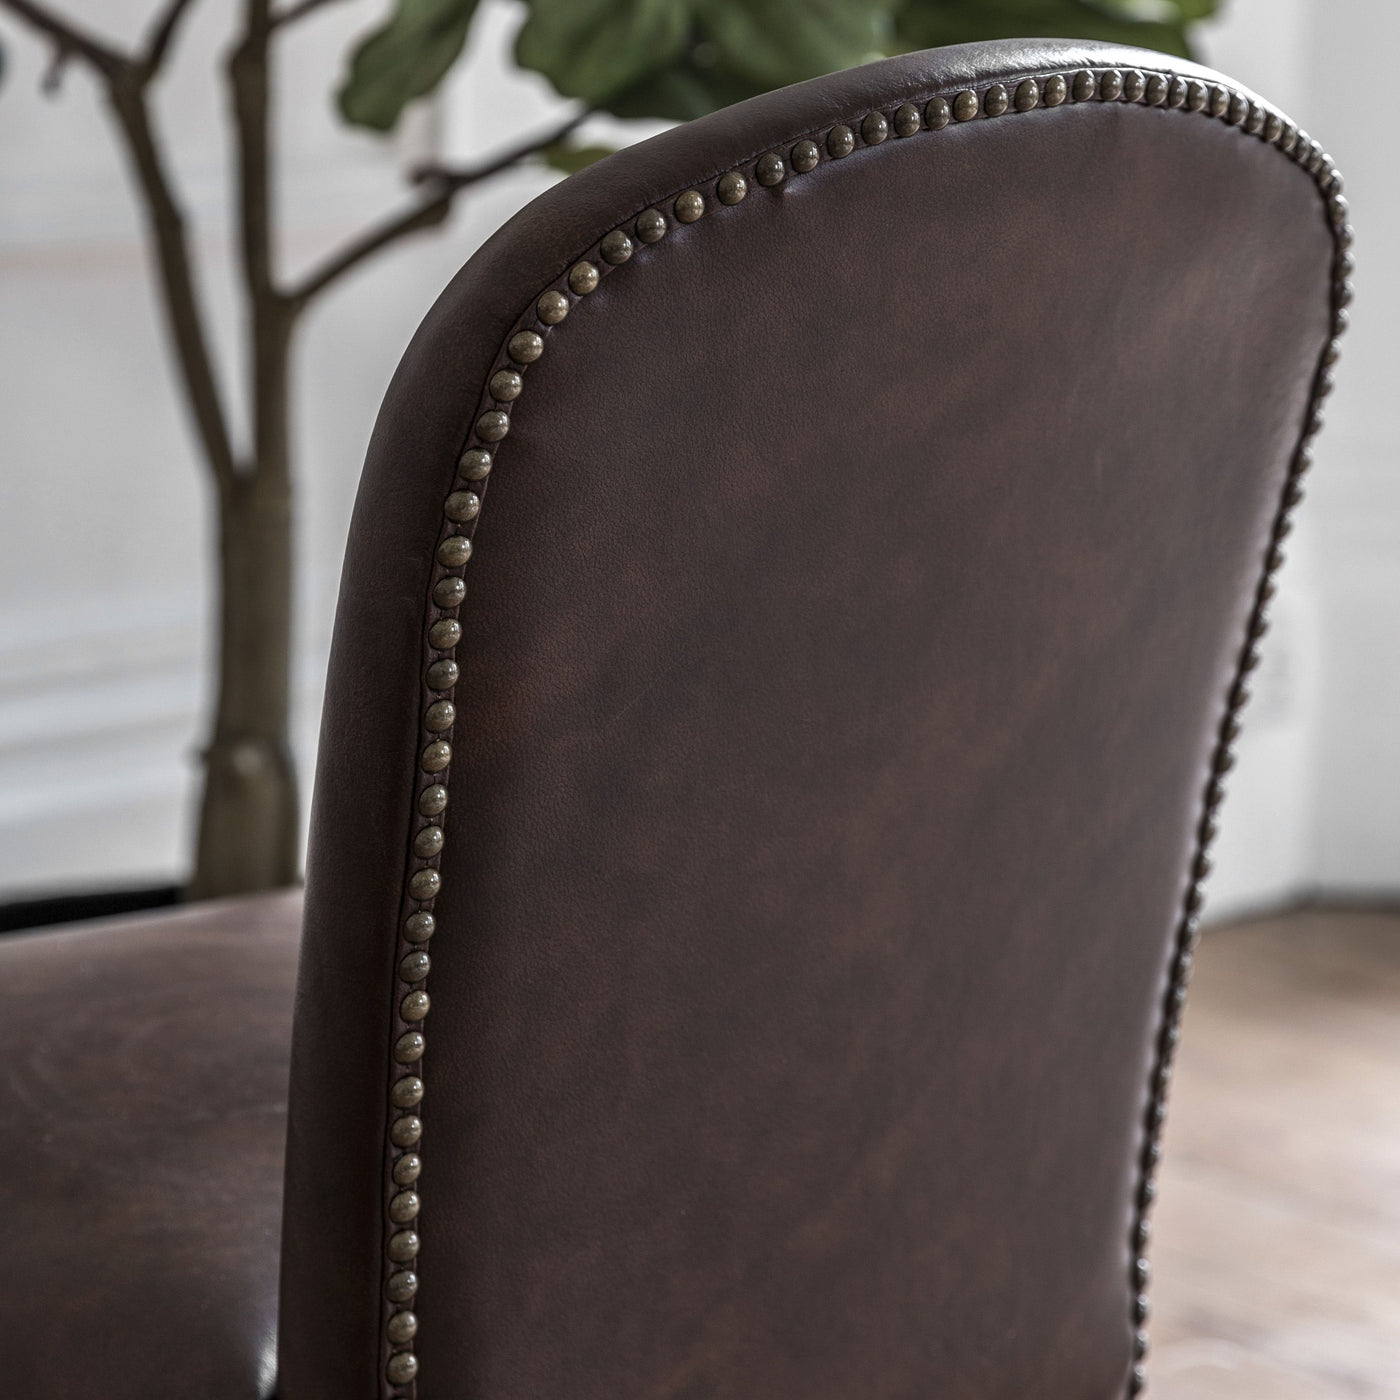 Zoar Dining Chair Brn Leath (2pk) 600x455x890mm